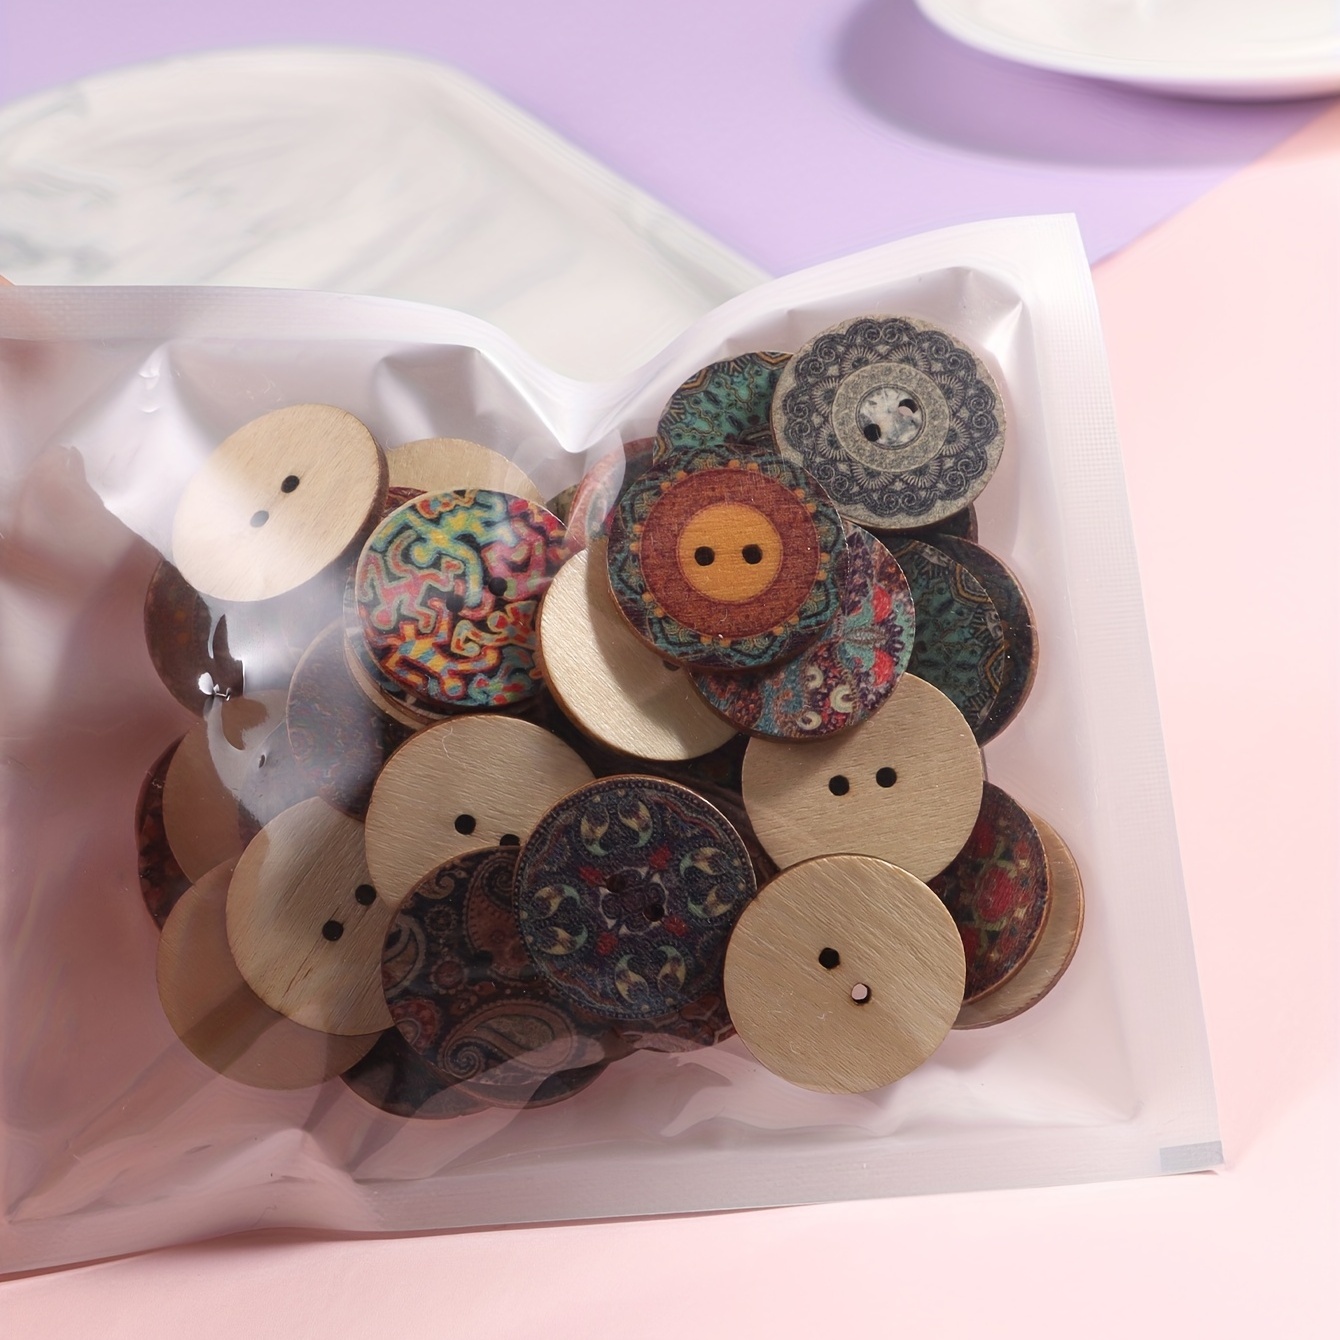 210 botones de madera impresos de 2 agujeros, botones temáticos de Pascua,  botones decorativos de madera para costura, álbumes de recortes, decoración